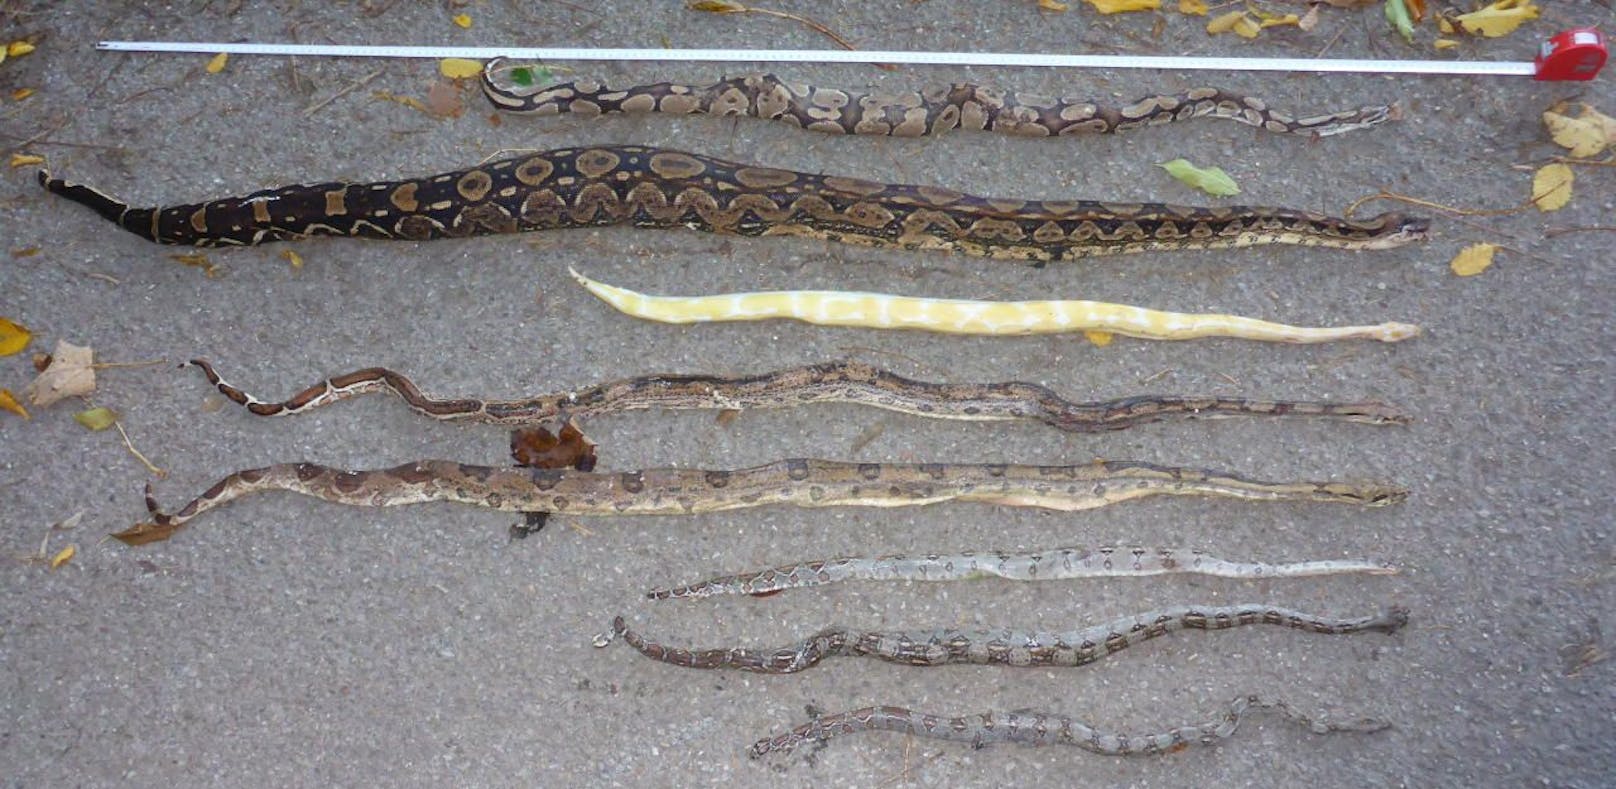 Die exotischen Schlangen wurden von ihrem Besitzer einfach im Wald zurückgelassen.